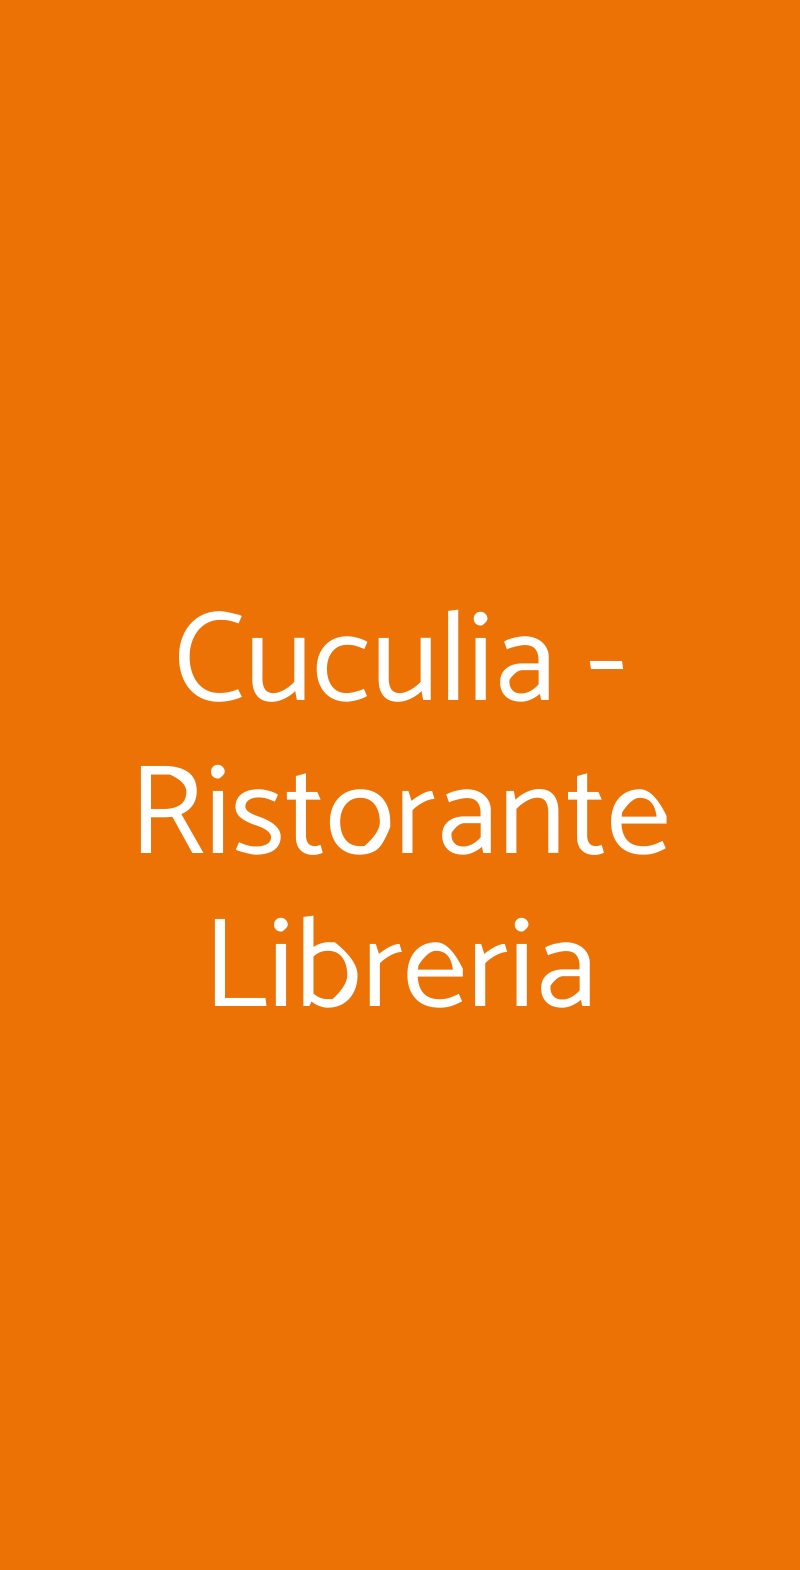 Cuculia - Ristorante Libreria Firenze menù 1 pagina